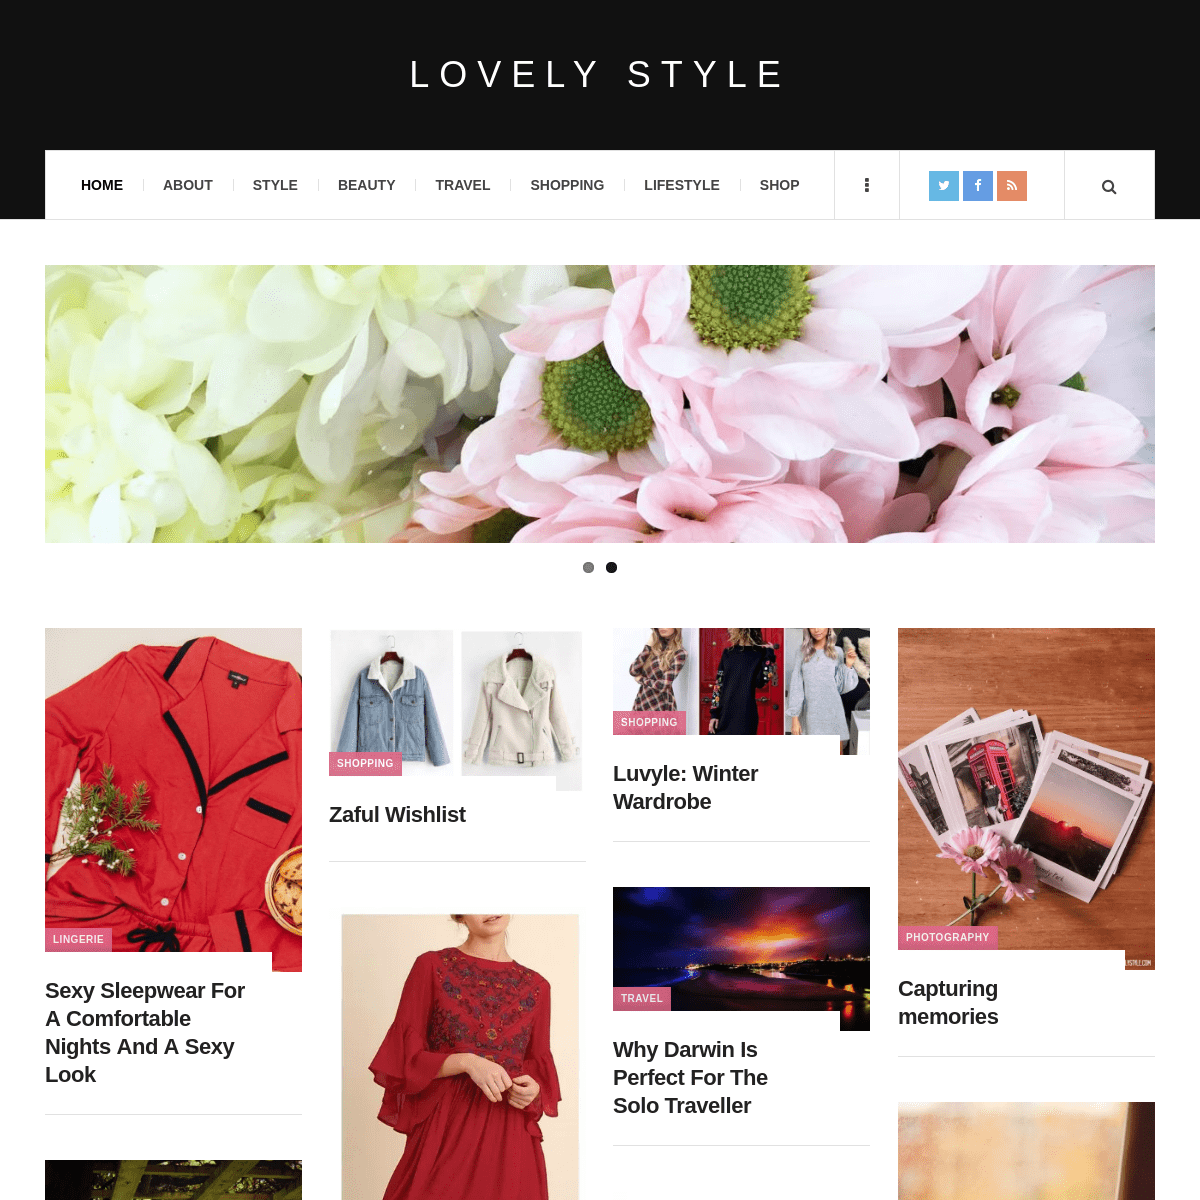 Lovely Style Blog